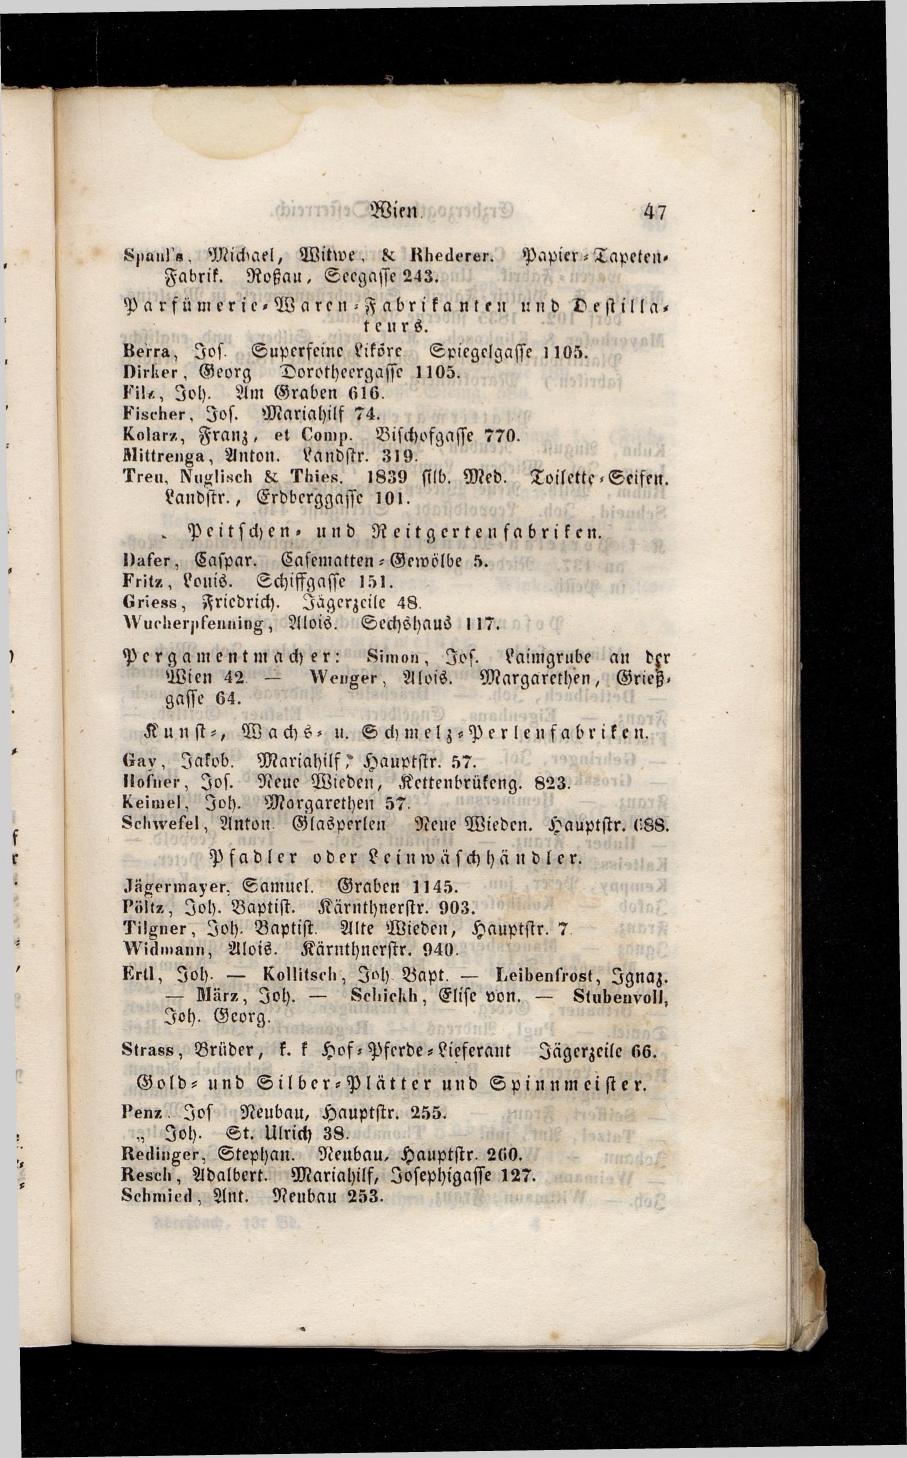 Grosses Adressbuch der Kaufleute. No. 13. Oesterreich ober u. unter der Enns 1844 - Seite 51